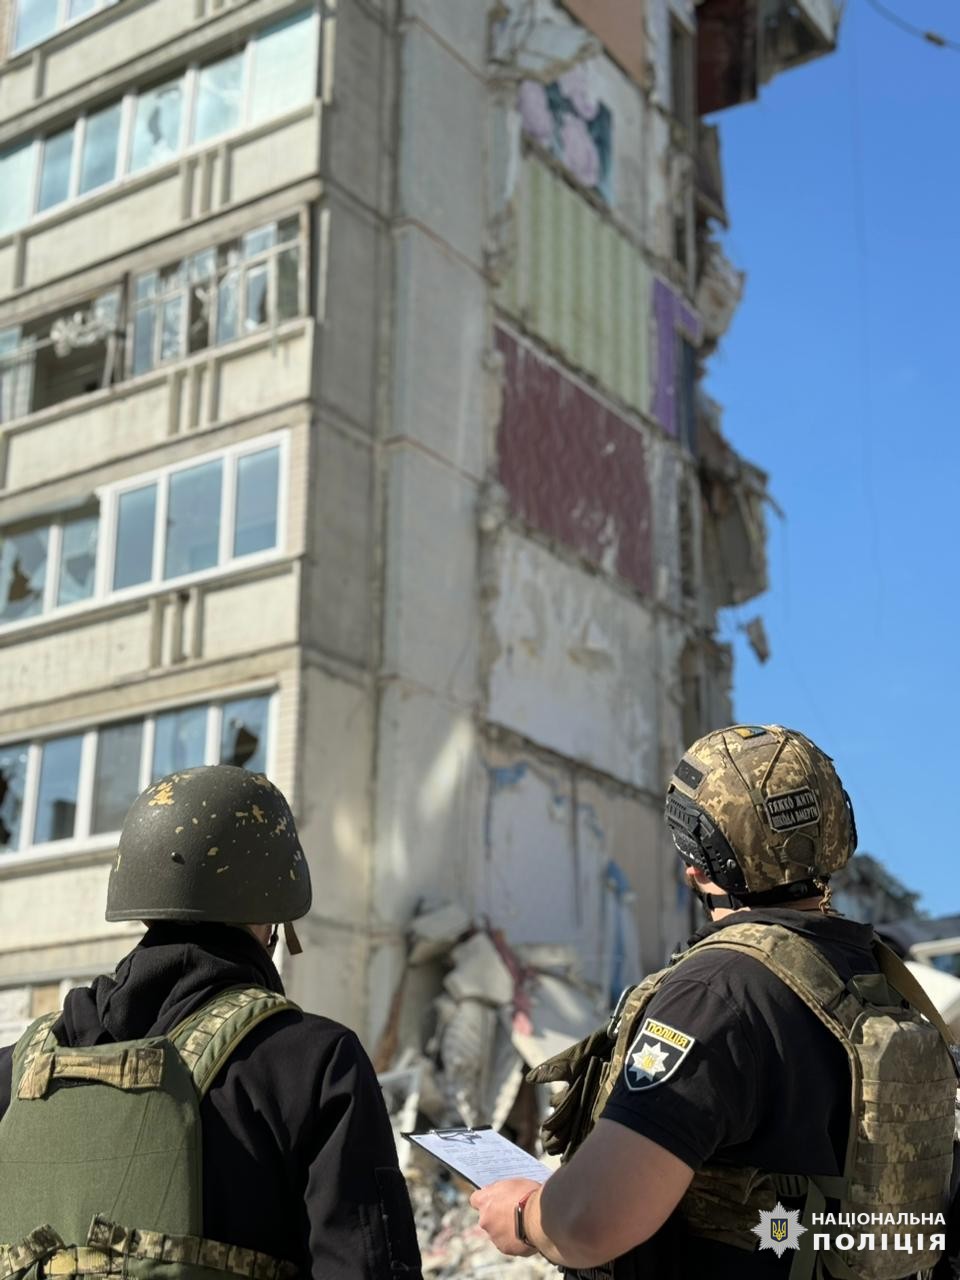 Росіяни скинули на житловий будинок у Вовчанську плануючий боєприпас, є загиблі: фото — фото